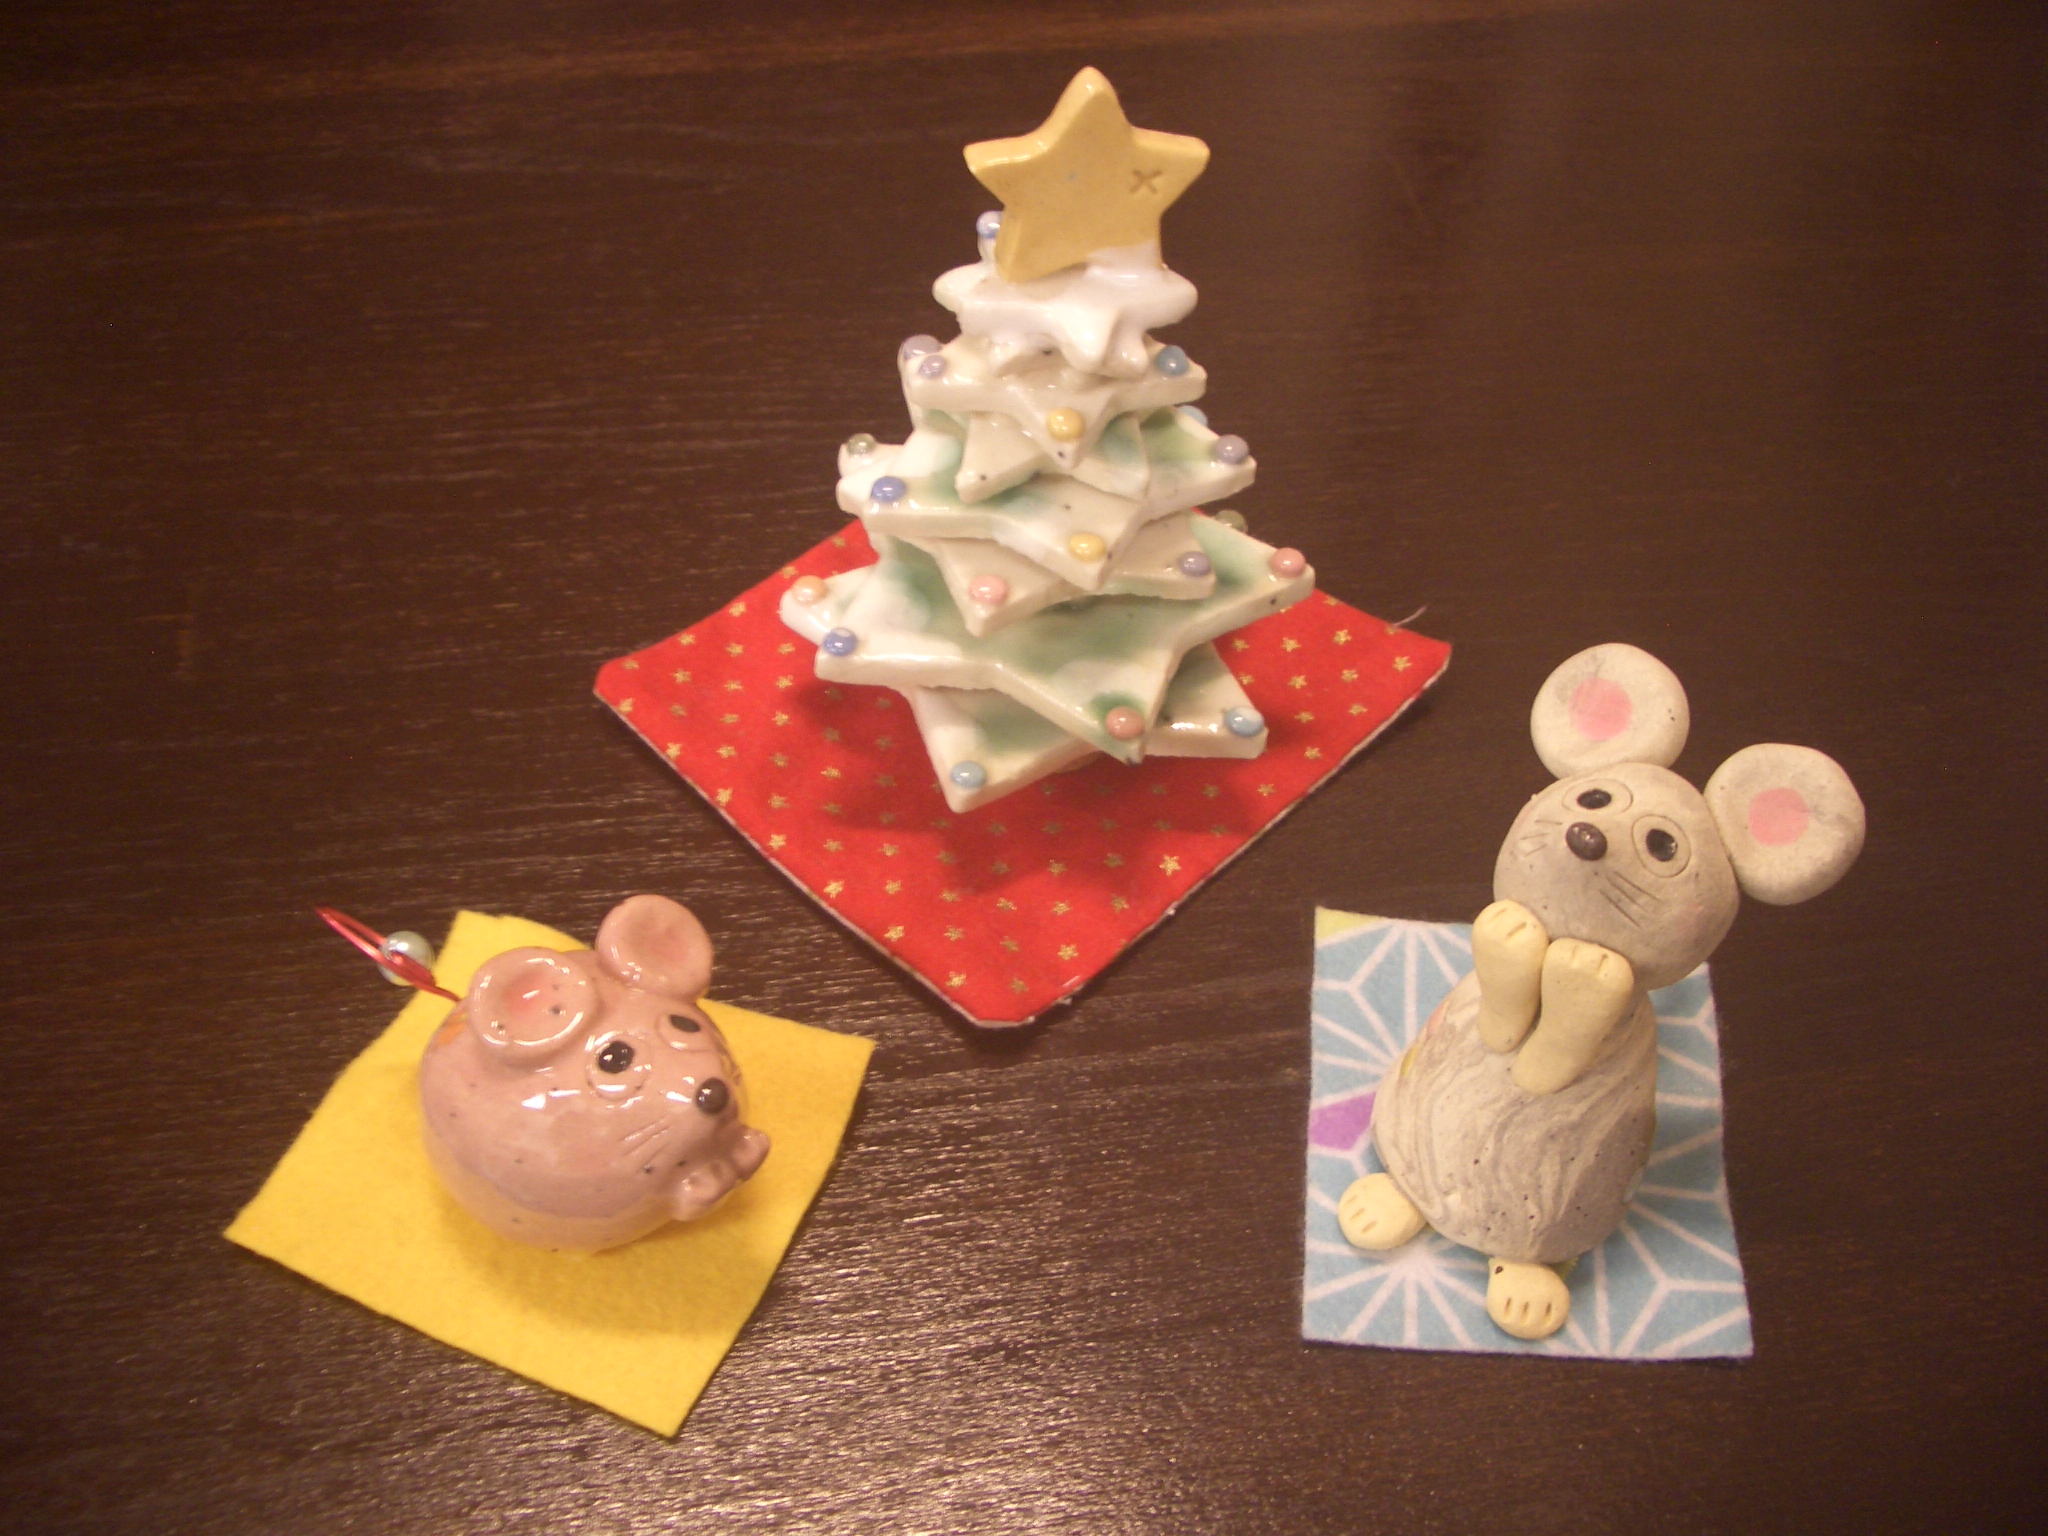 「クリスマスツリー」と「ねずみちゃん」